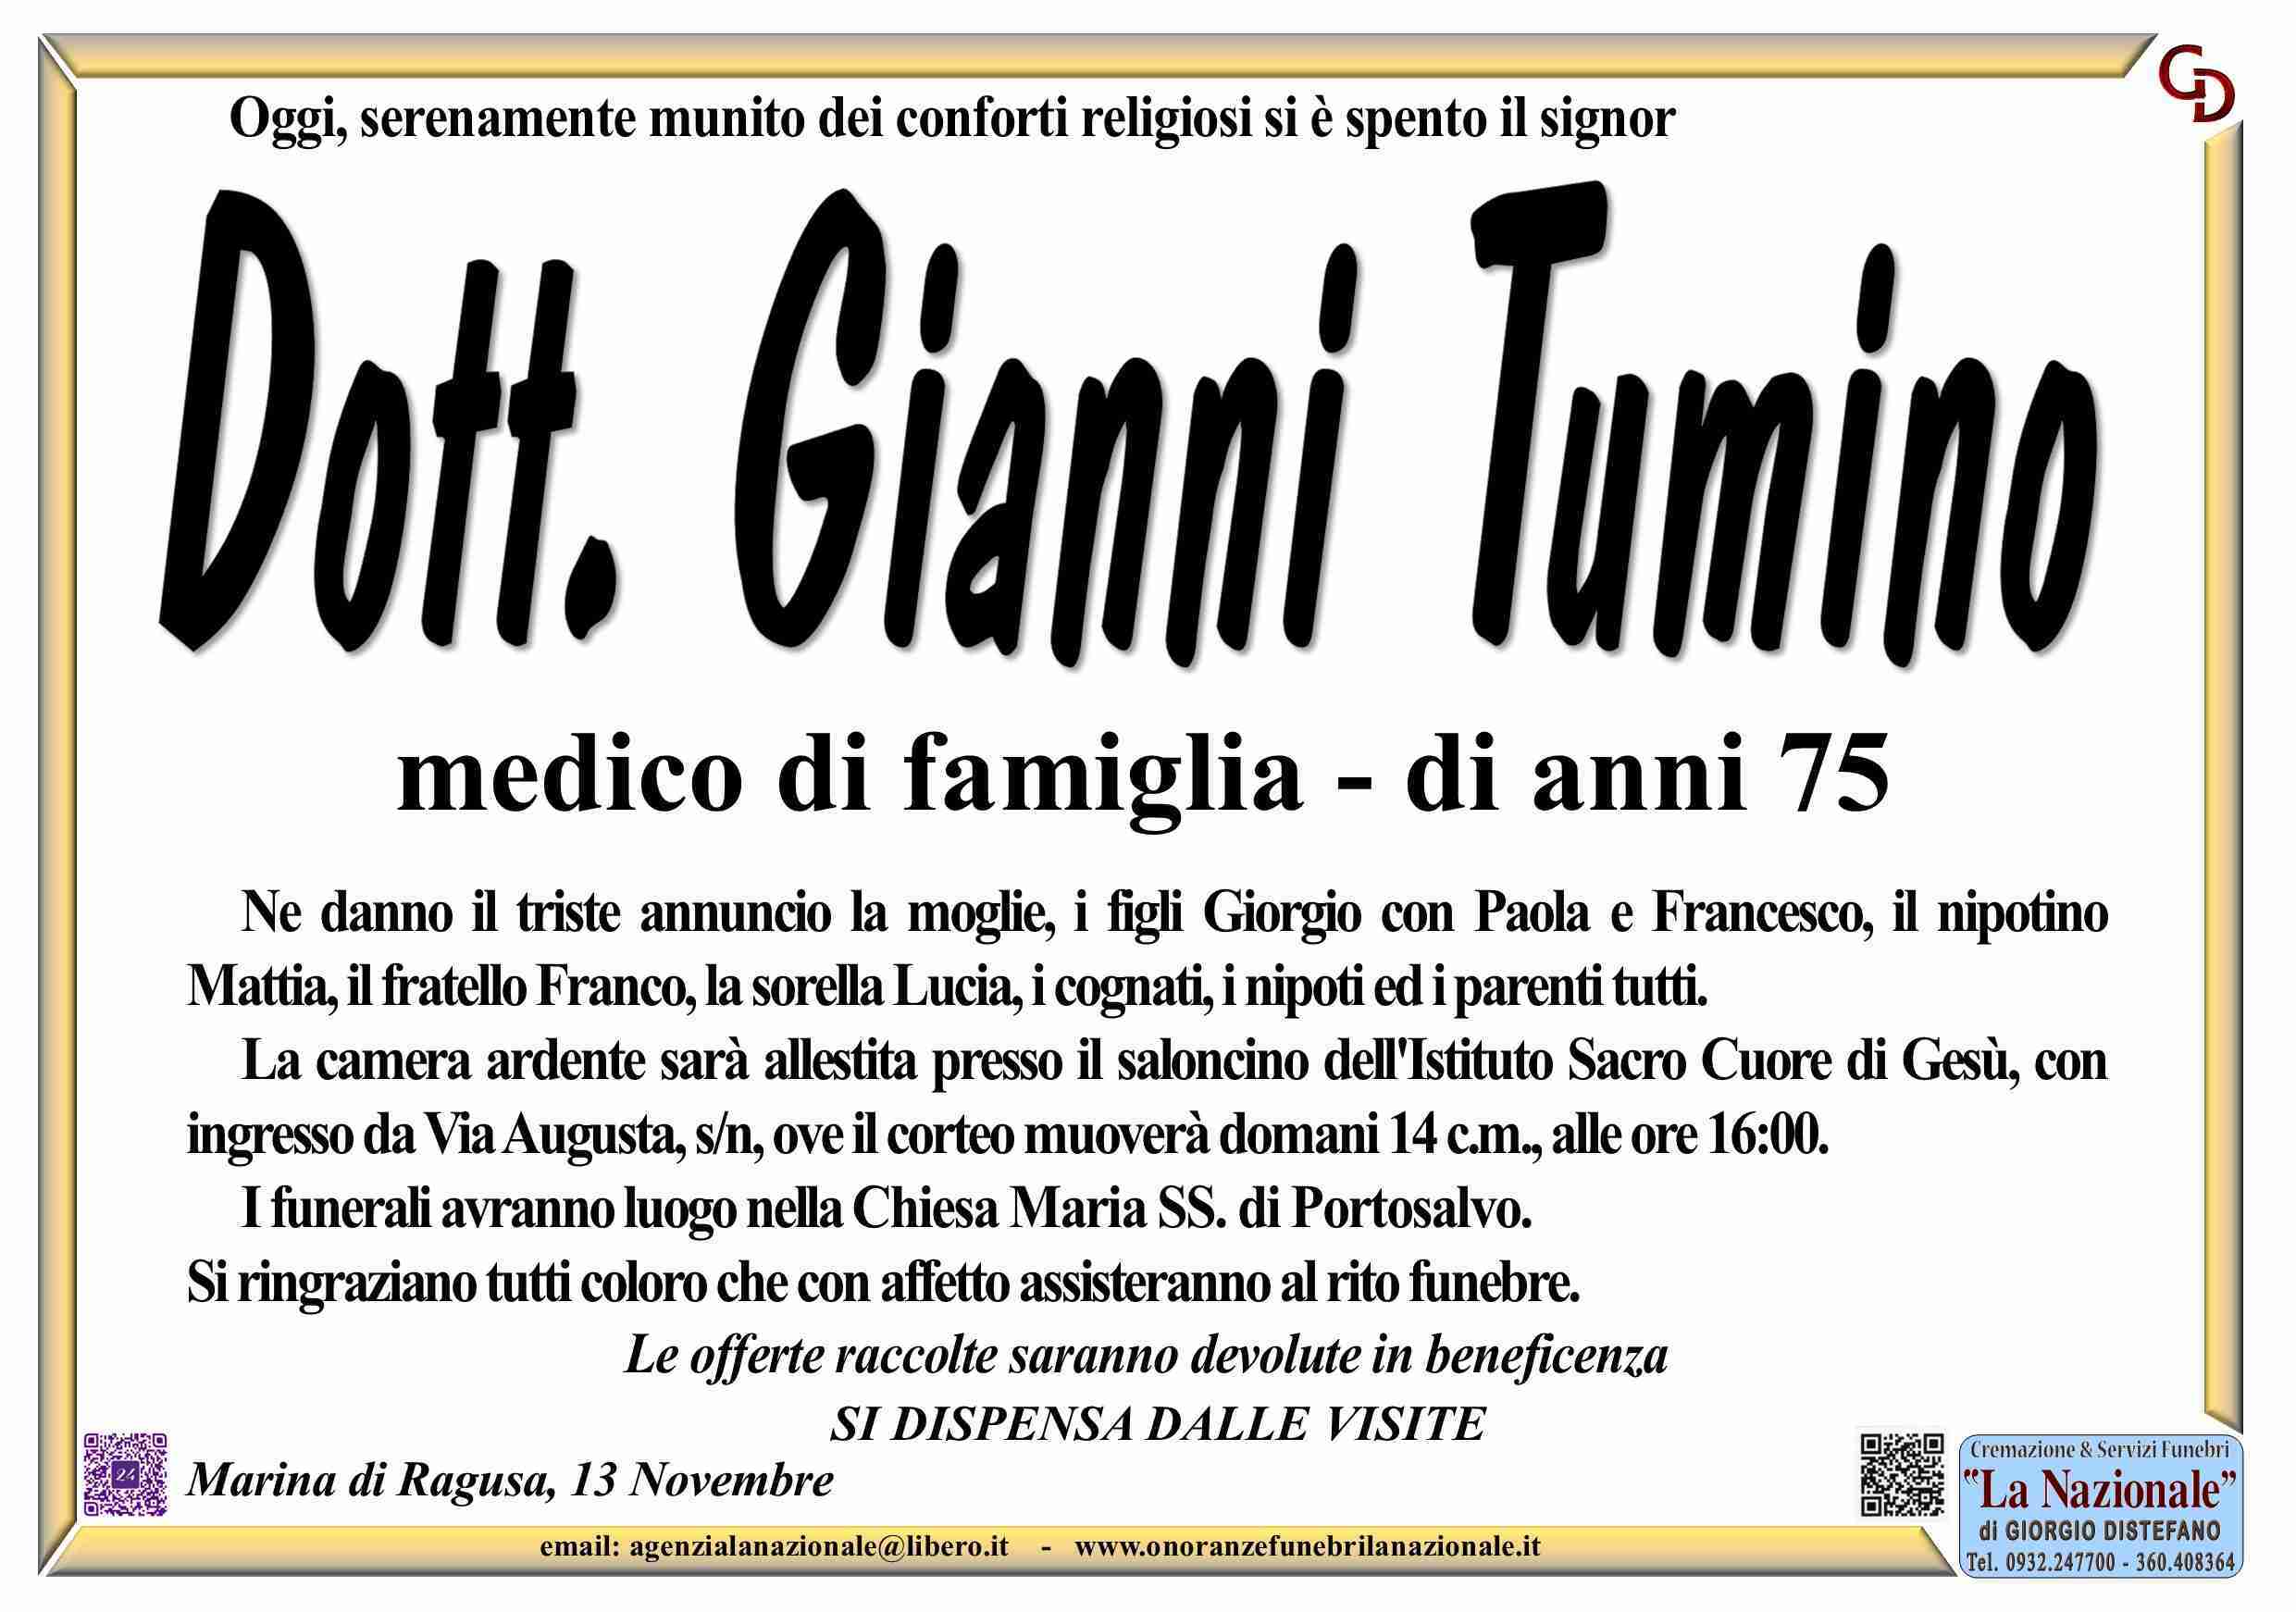 Gianni Tumino